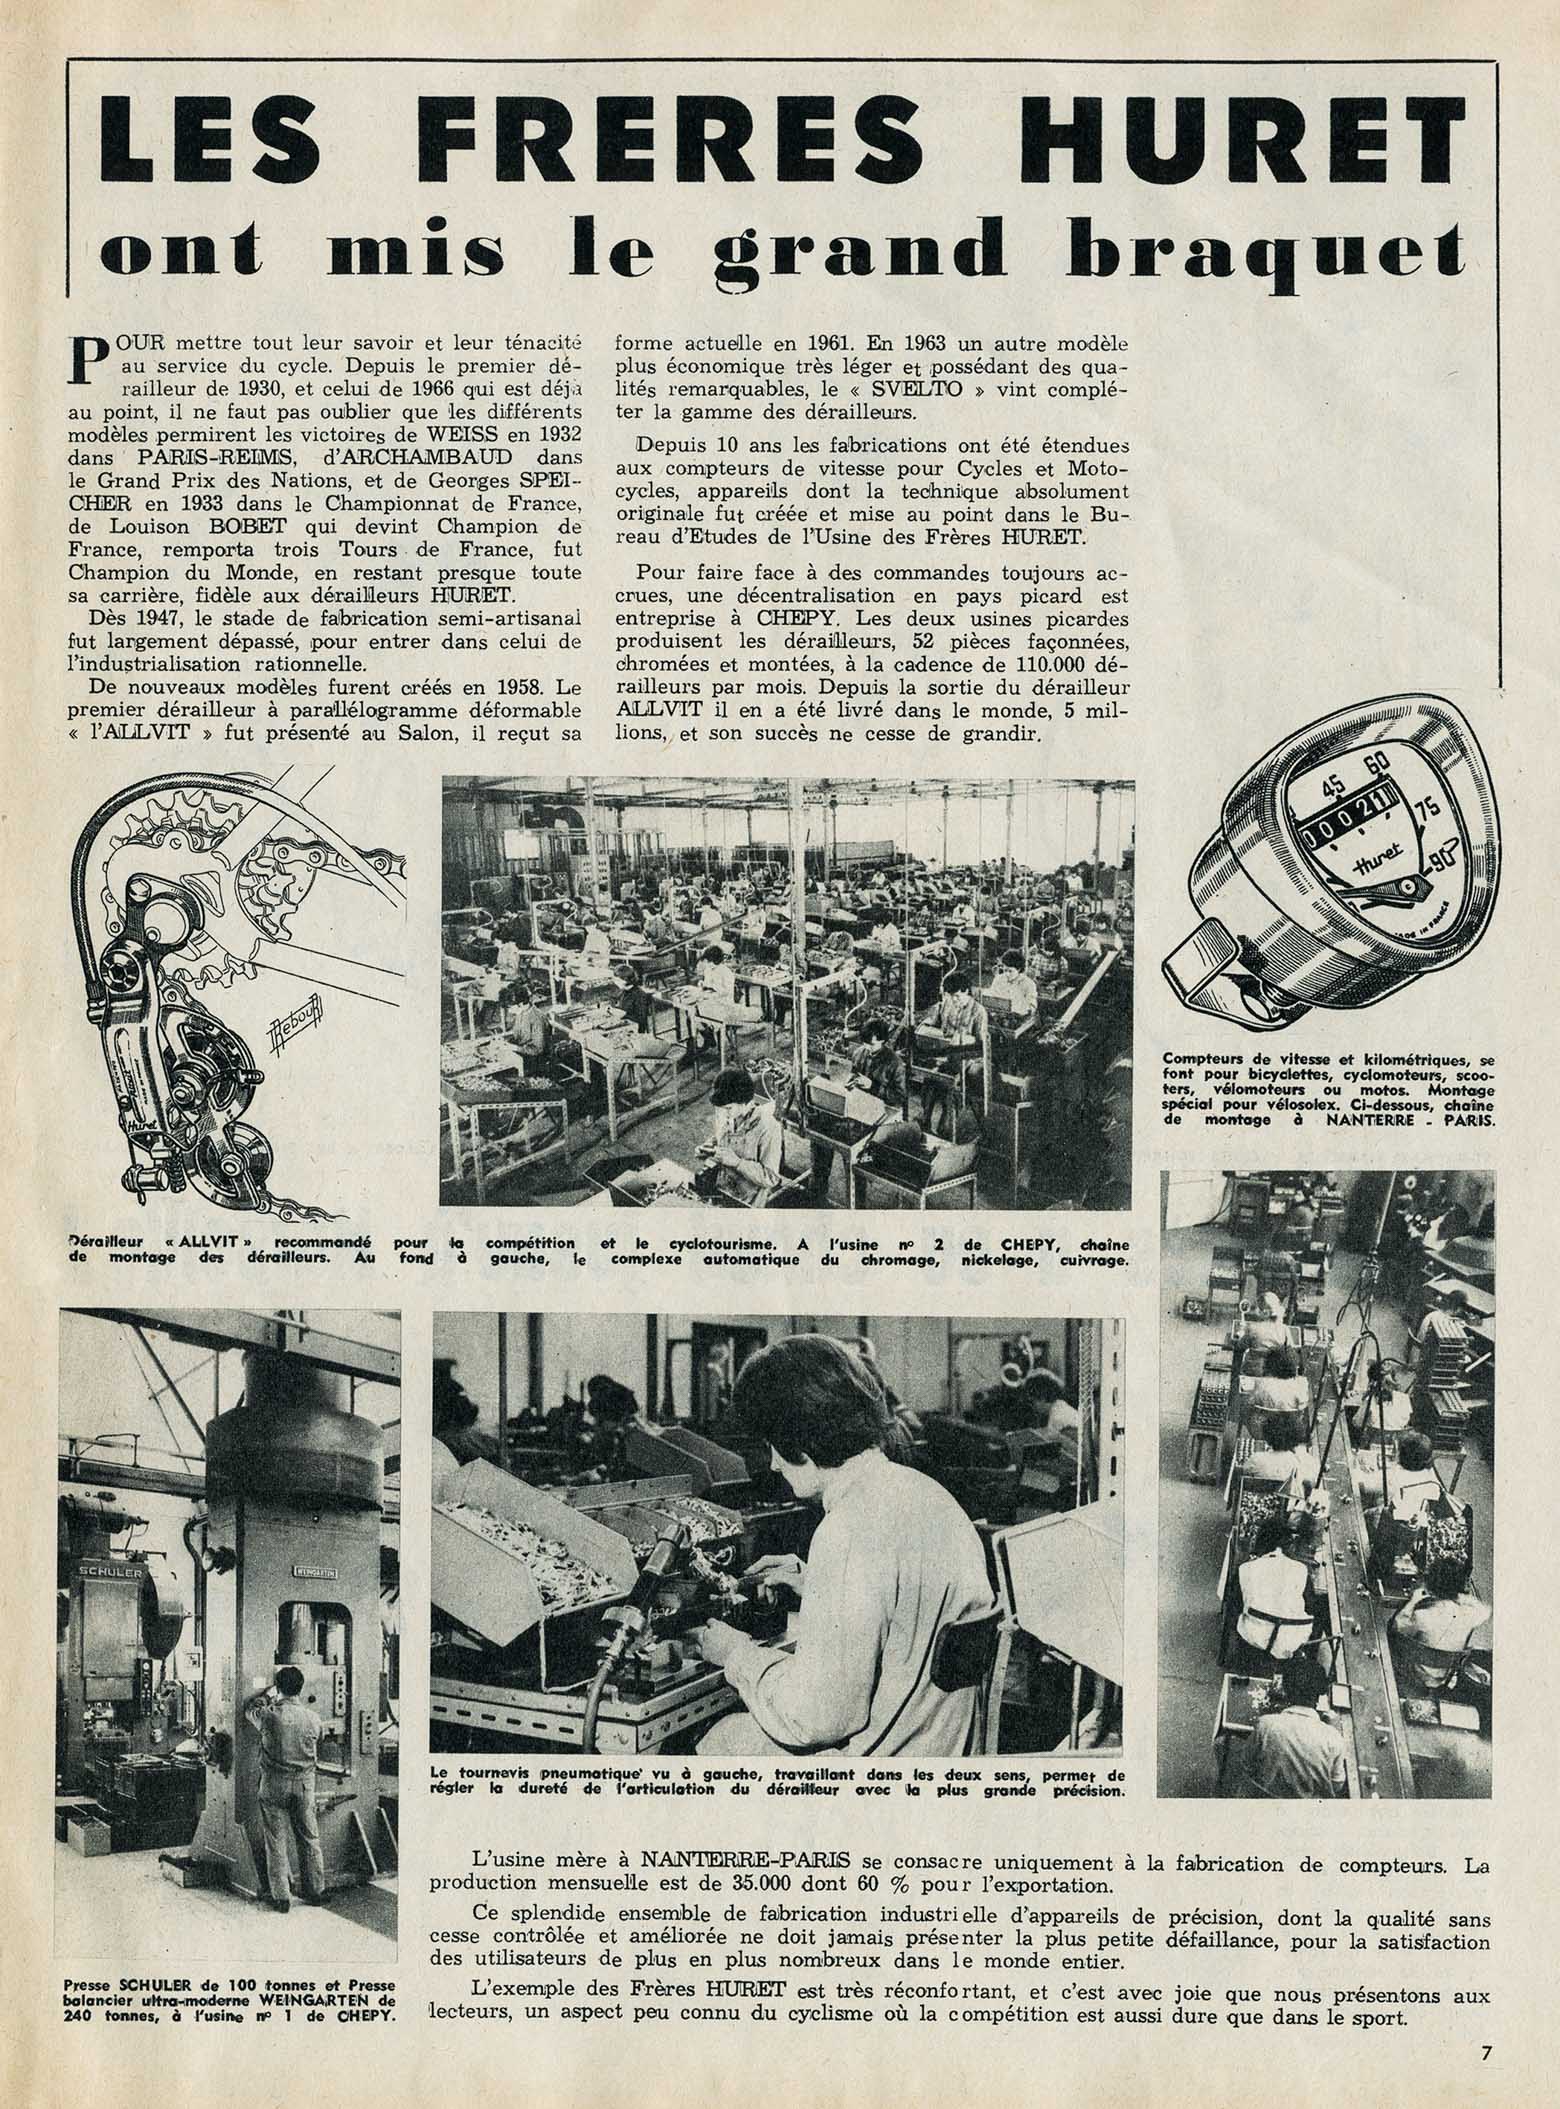 Le Miroir des Sports 05-04-1965 Huret article main image